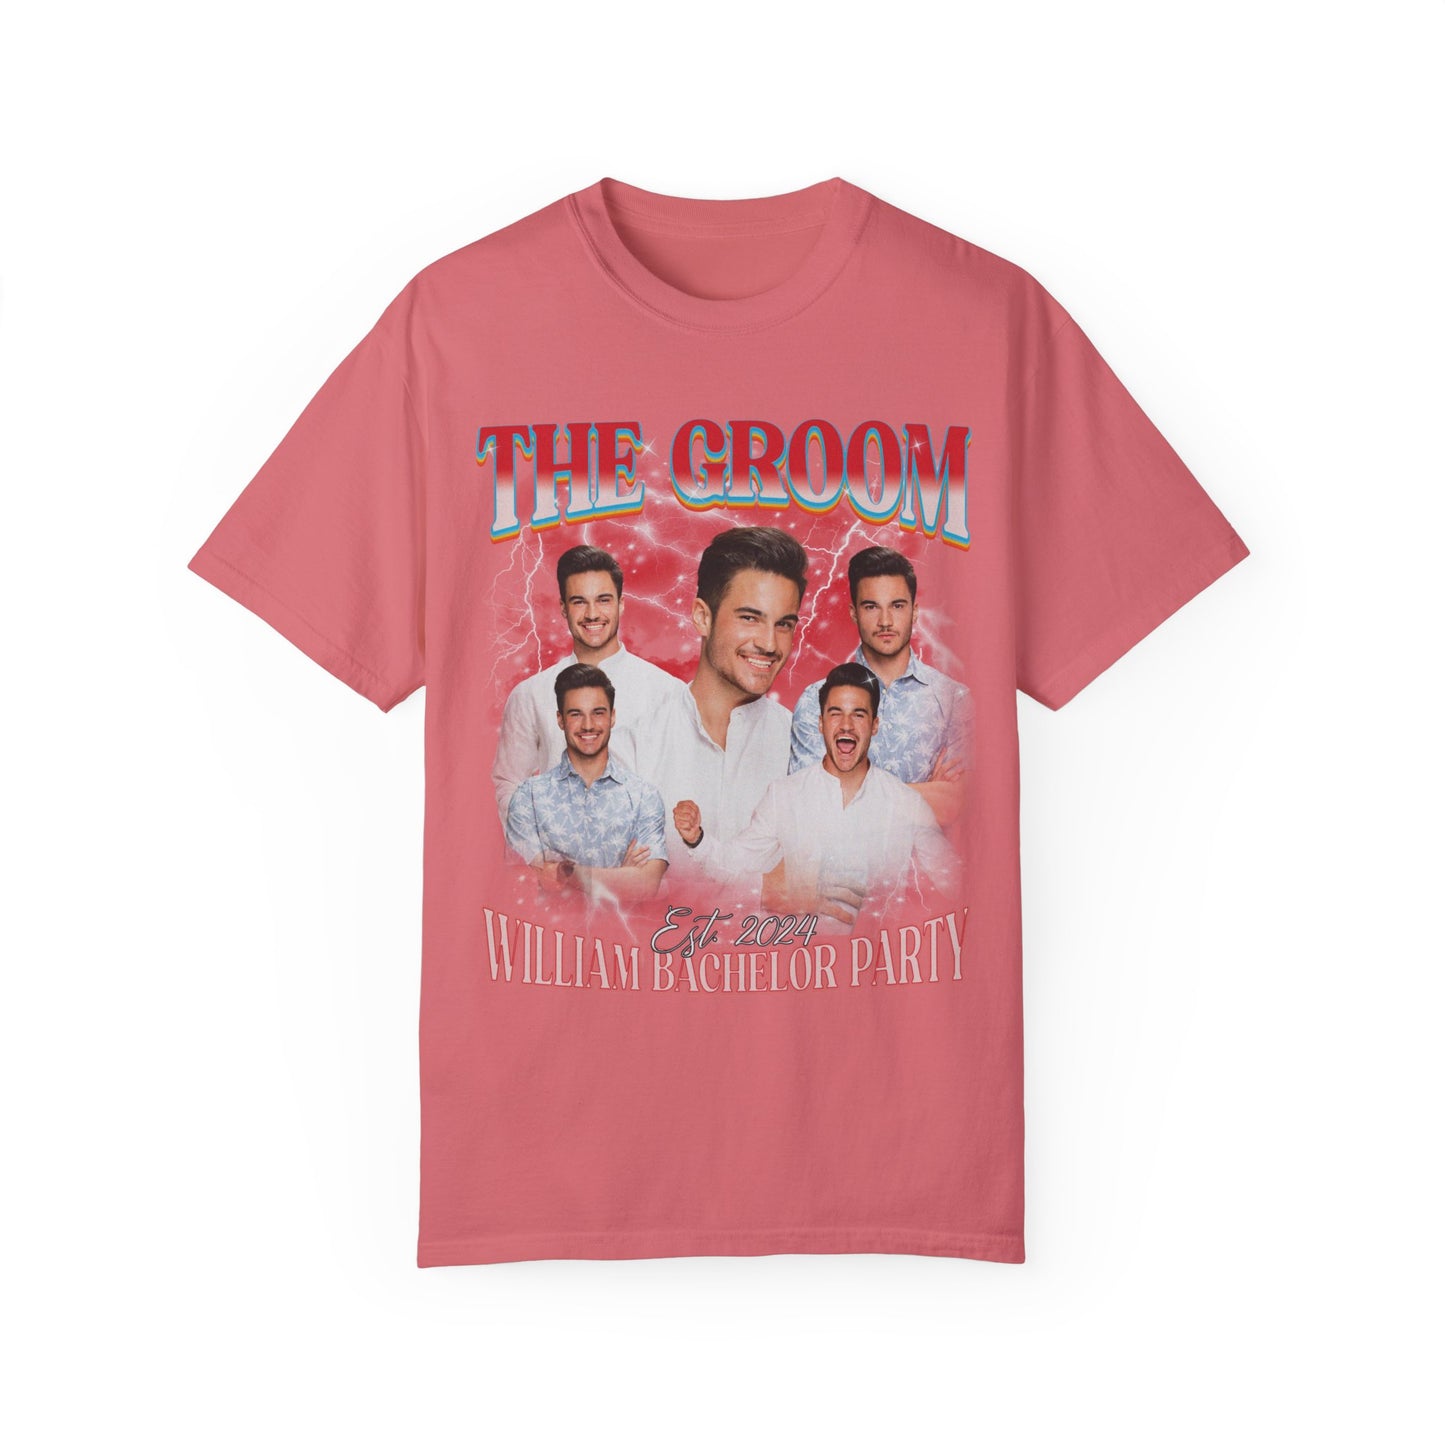 The Groom Bachelor Party Shirts, Groomsmen Shirts, Custom Bachelor Party Gifts, Funny Bachelor Shirts, Group Bachelor Shirts, CC1560